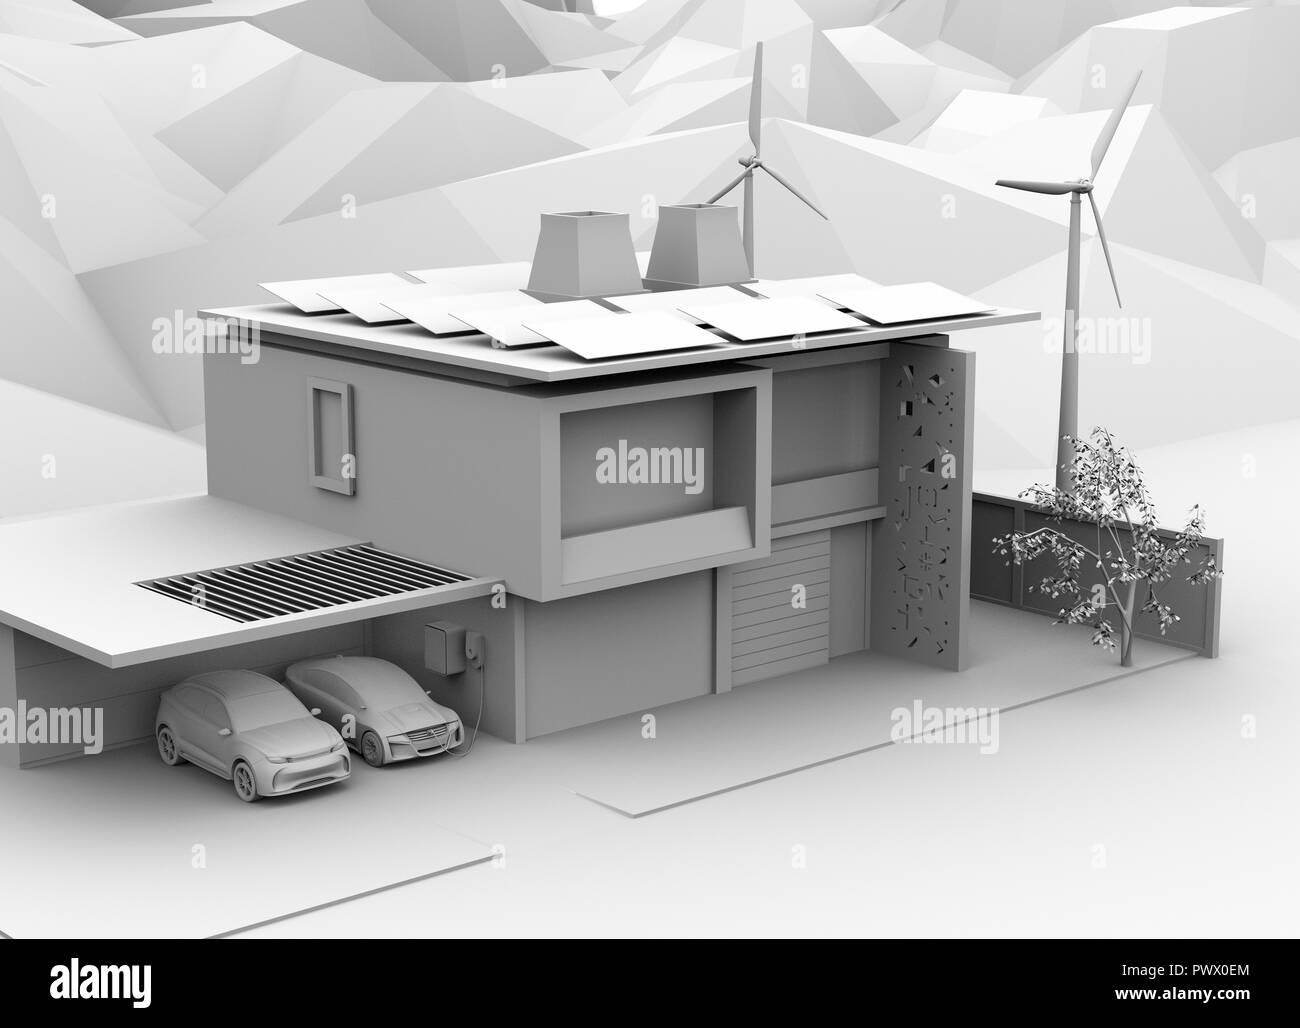 Il rendering di argilla del veicolo elettrico la ricarica in garage. La casa intelligente alimentato da pannelli solari e di turbine eoliche. Il rendering 3D'immagine. Foto Stock